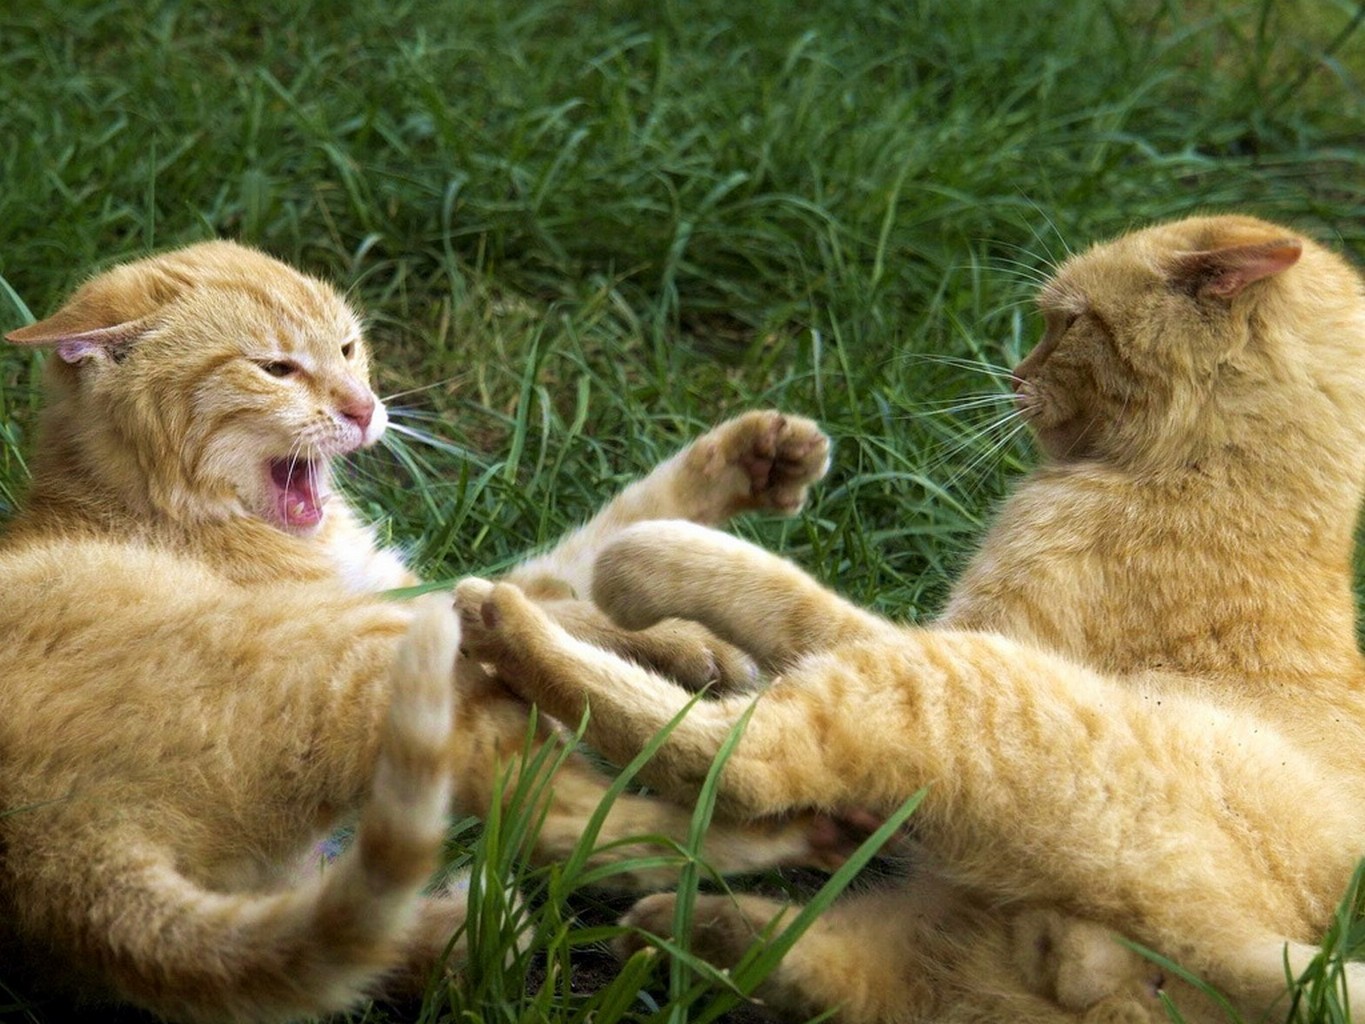 cat fight in grass.